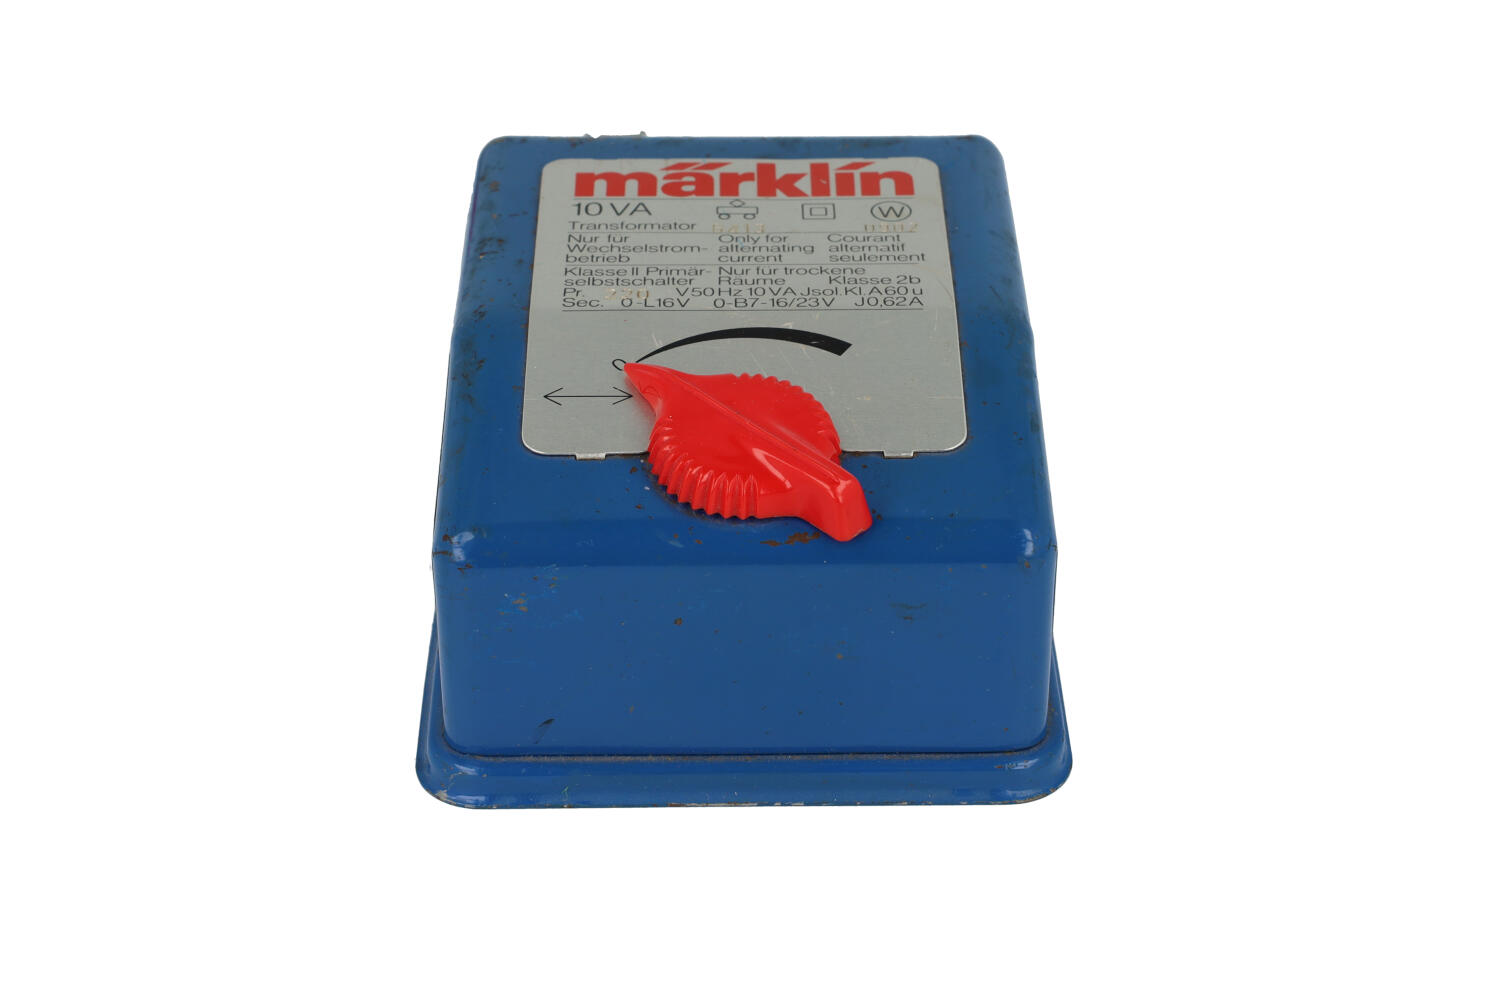 Marklin 6413 Transformator 16volt - 10Va - Modeltreinshop